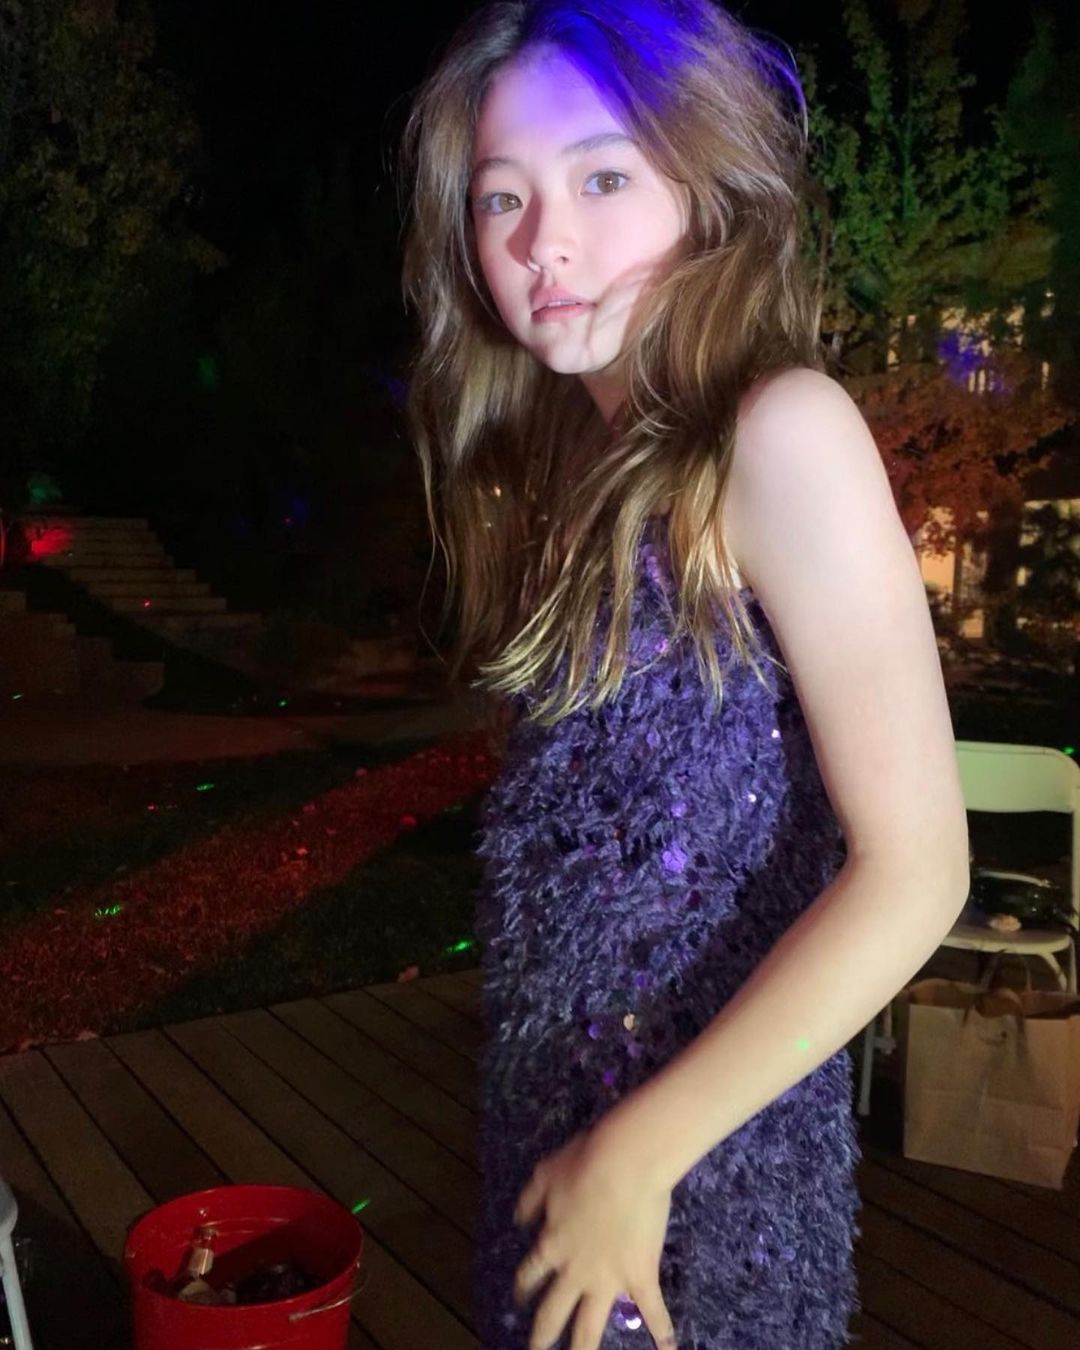 Nhan sắc mẫu nhí xinh nhất thế giới được Sơn Tùng follow ở tuổi 13 - Ảnh 11